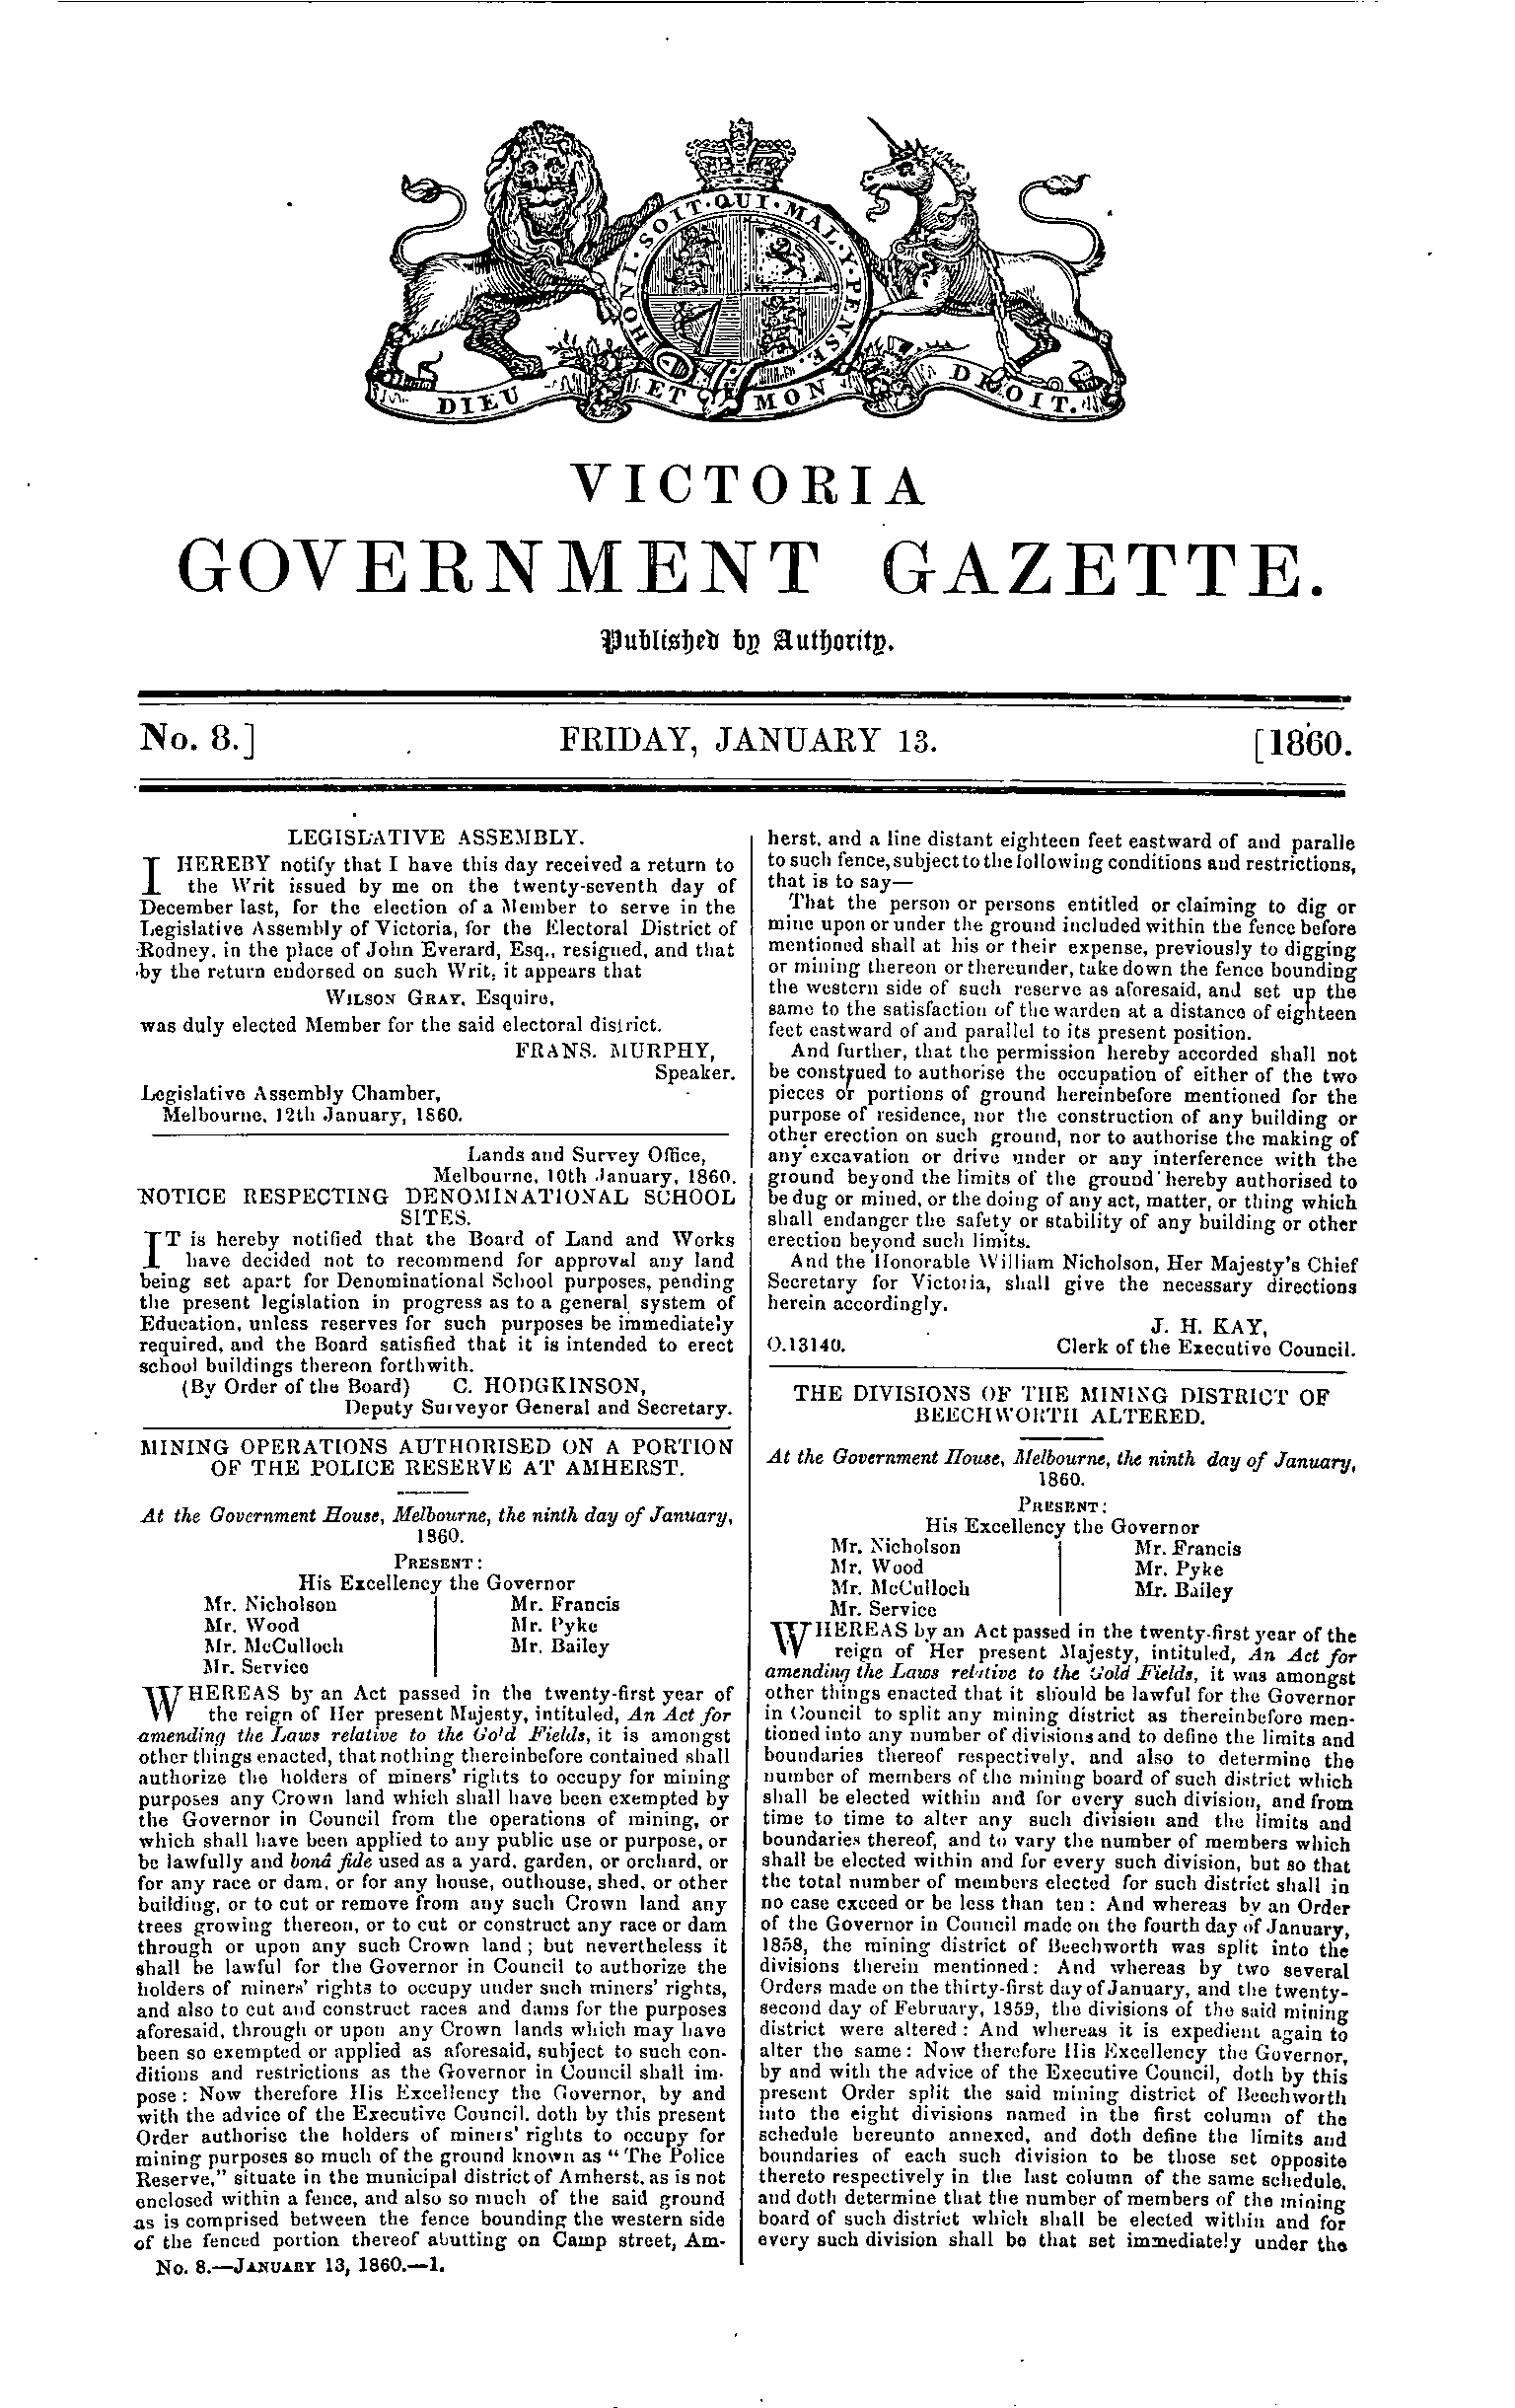 Victoria Government Gazette Online Archive 1860 P85